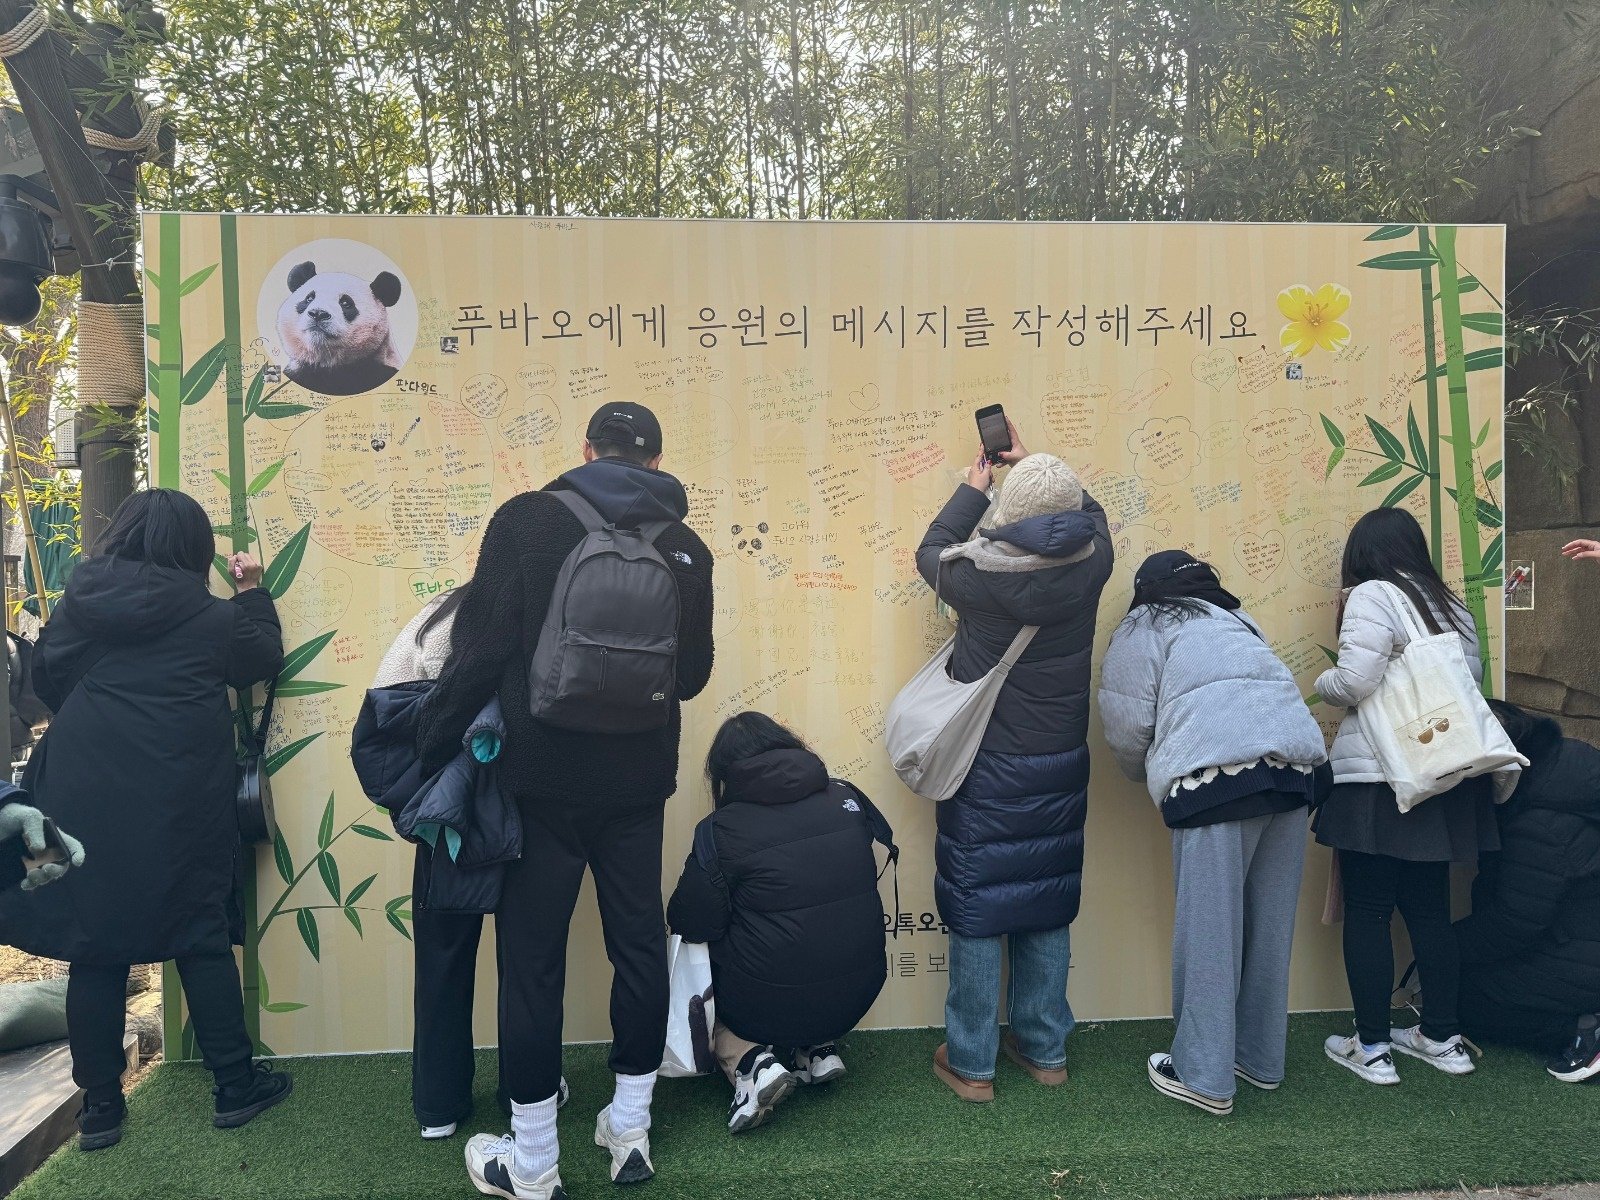 游客本月3日在韩国三星爱宝乐园熊猫世界外留言。（图取自中新社）